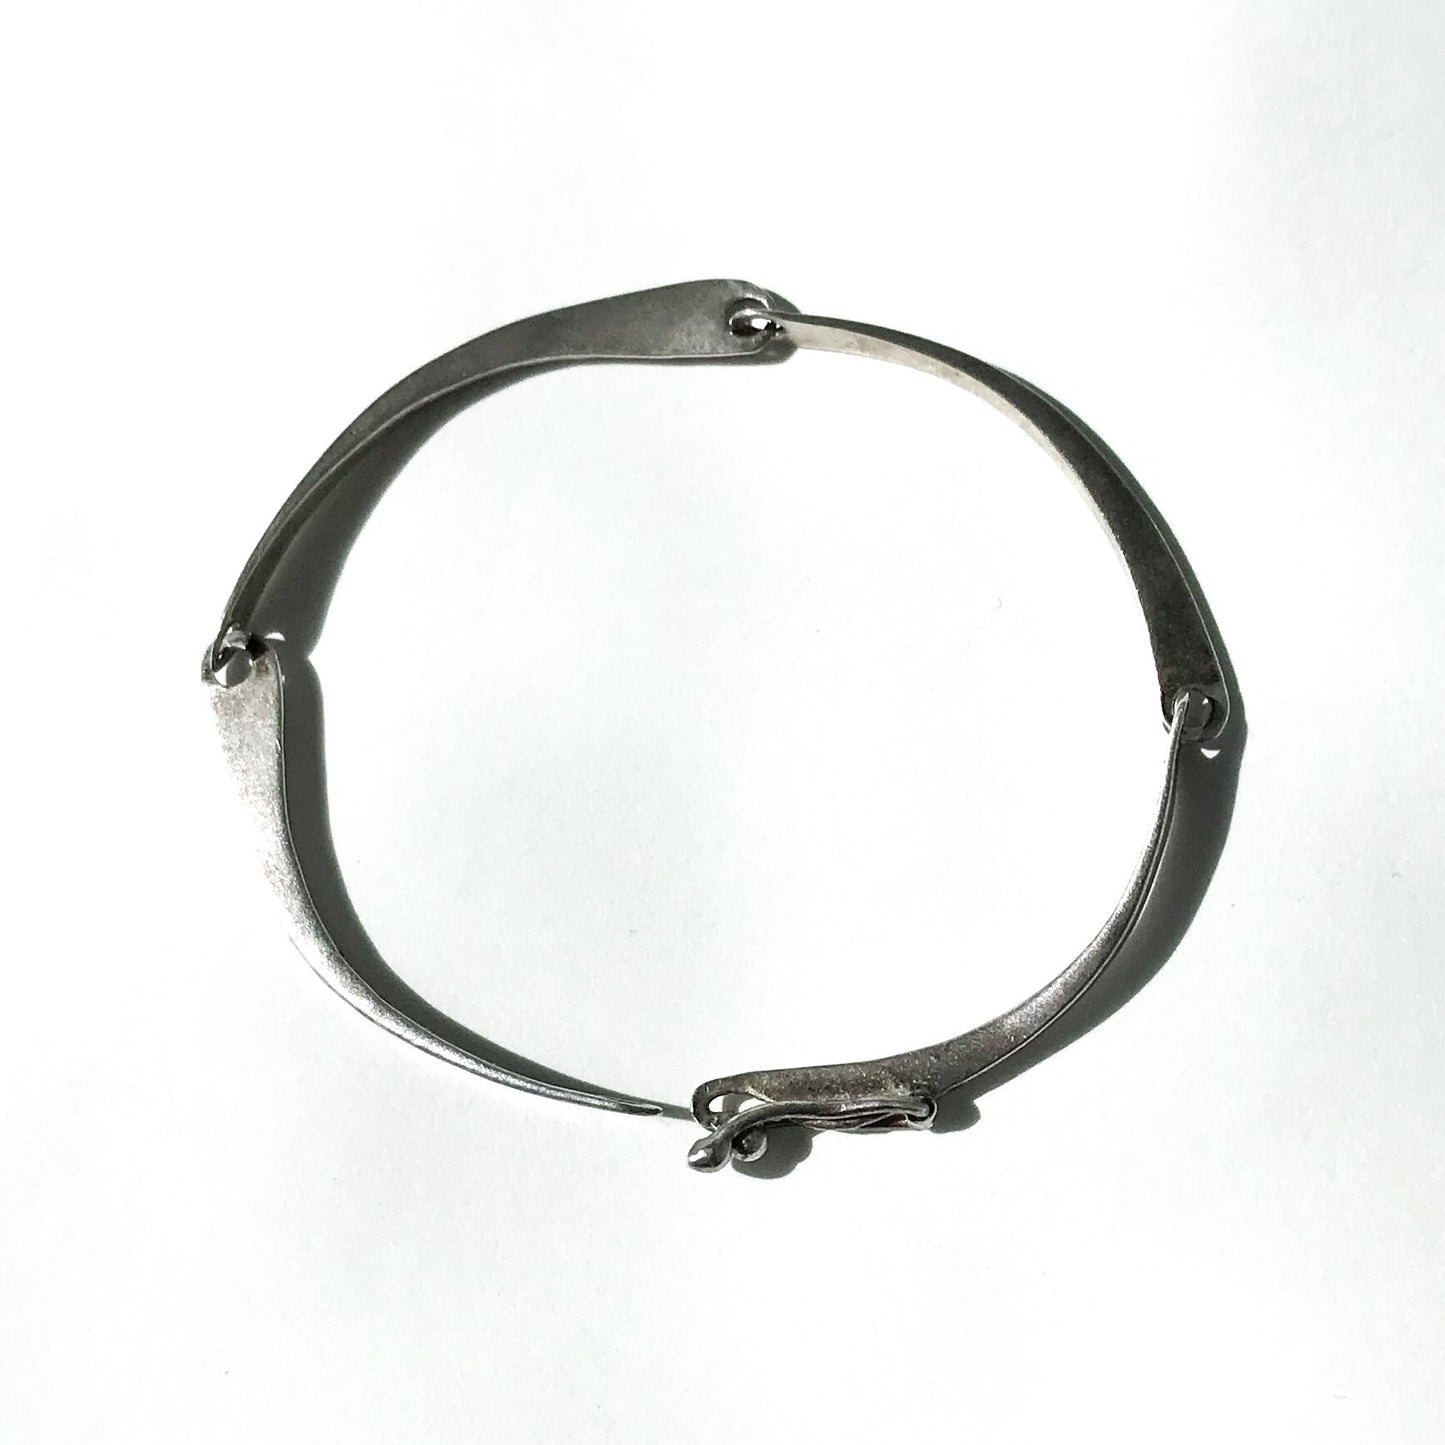 SOLD--Vintage Modernist Segmented Curve Bracelet Sterling c. 1960